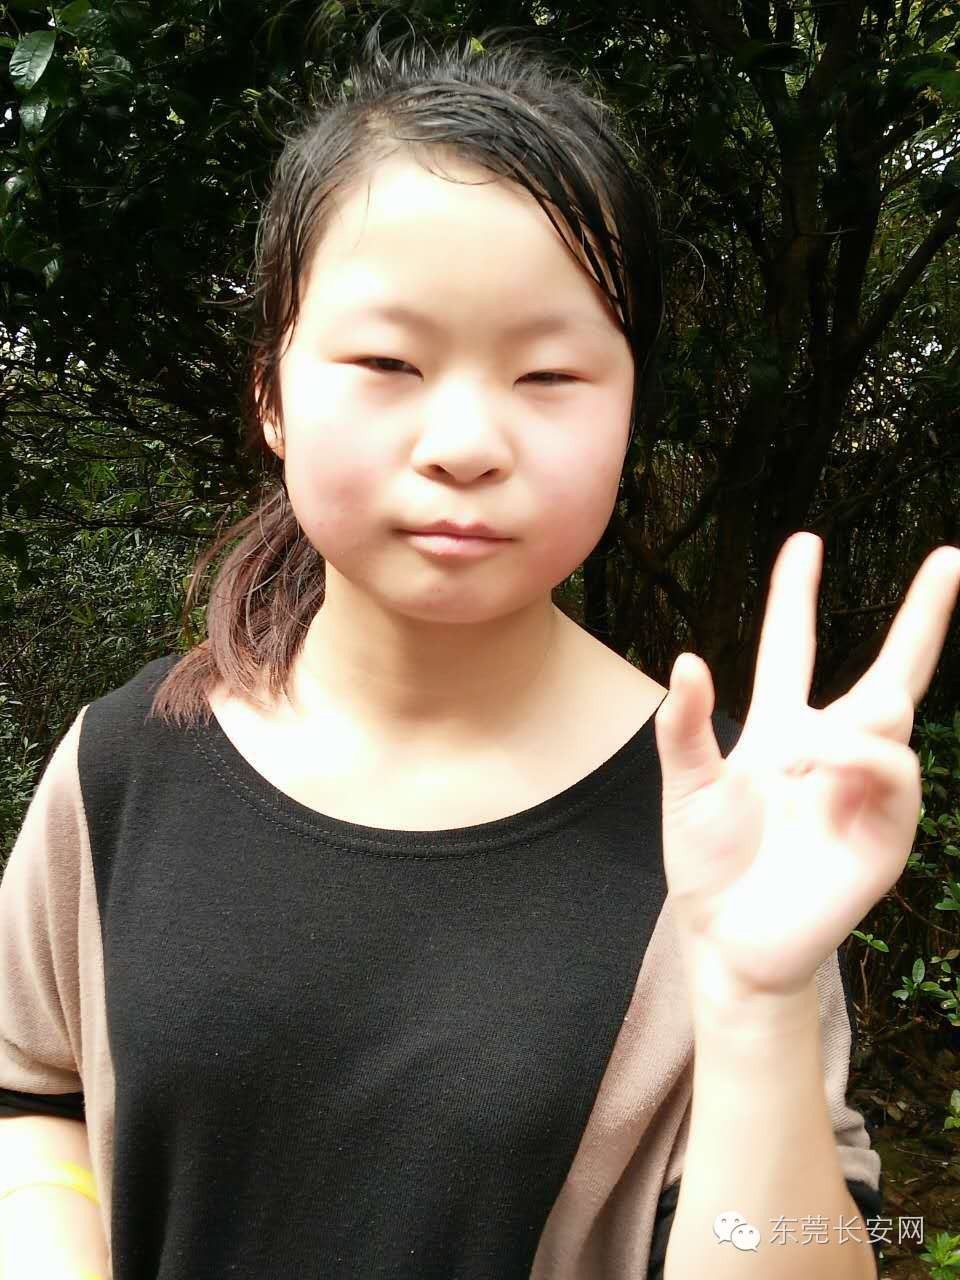 这个15岁女孩在长安已失踪8天,请大家帮忙寻找并扩散!